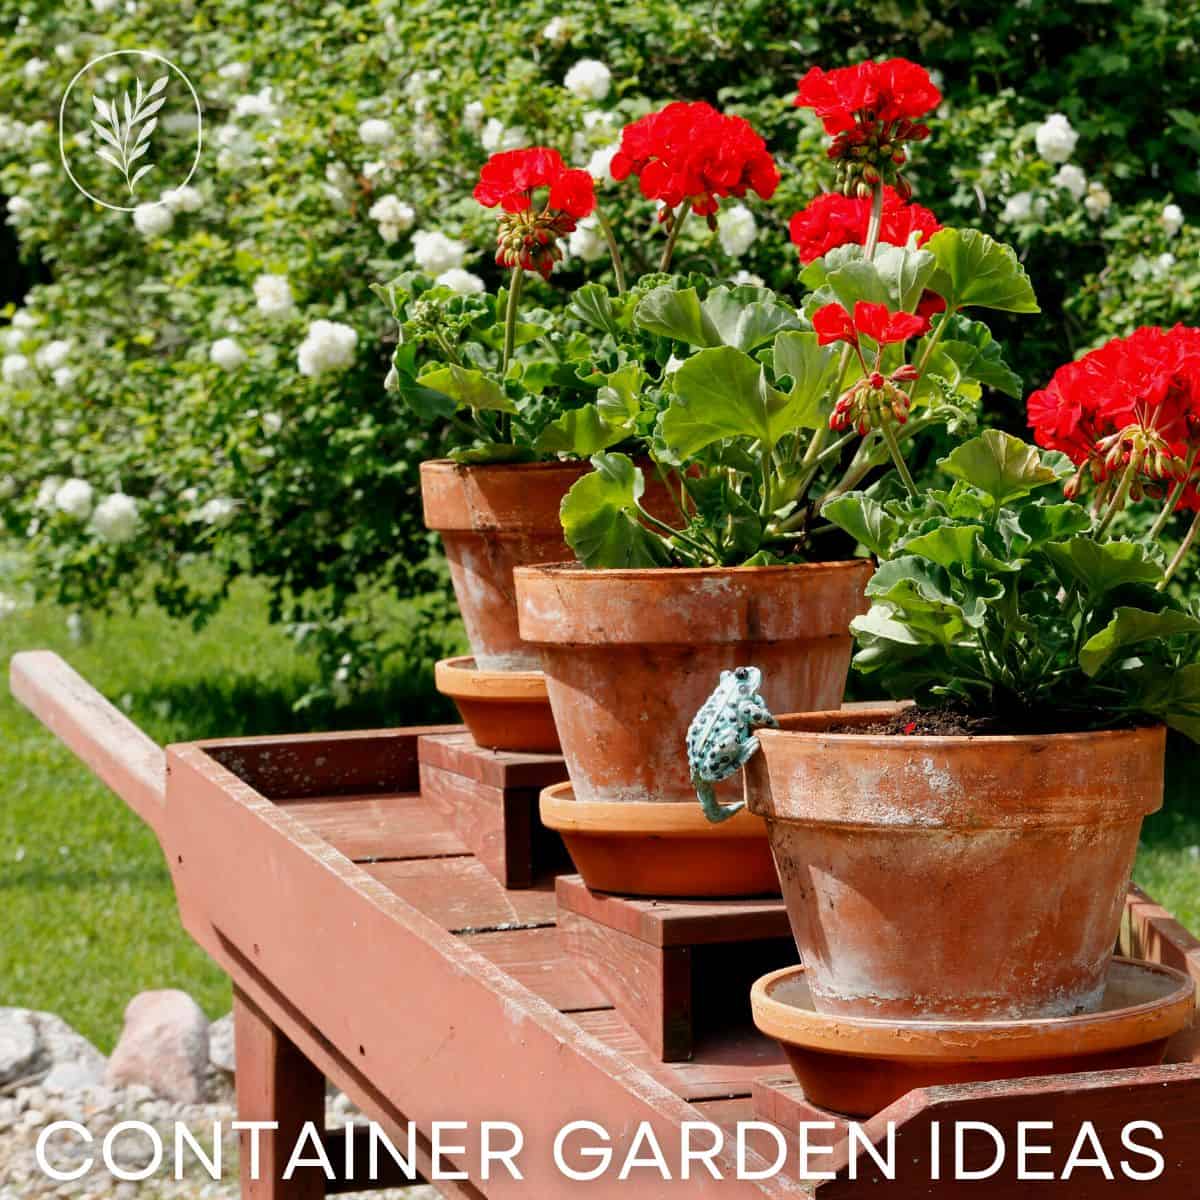 Container garden ideas via @home4theharvest